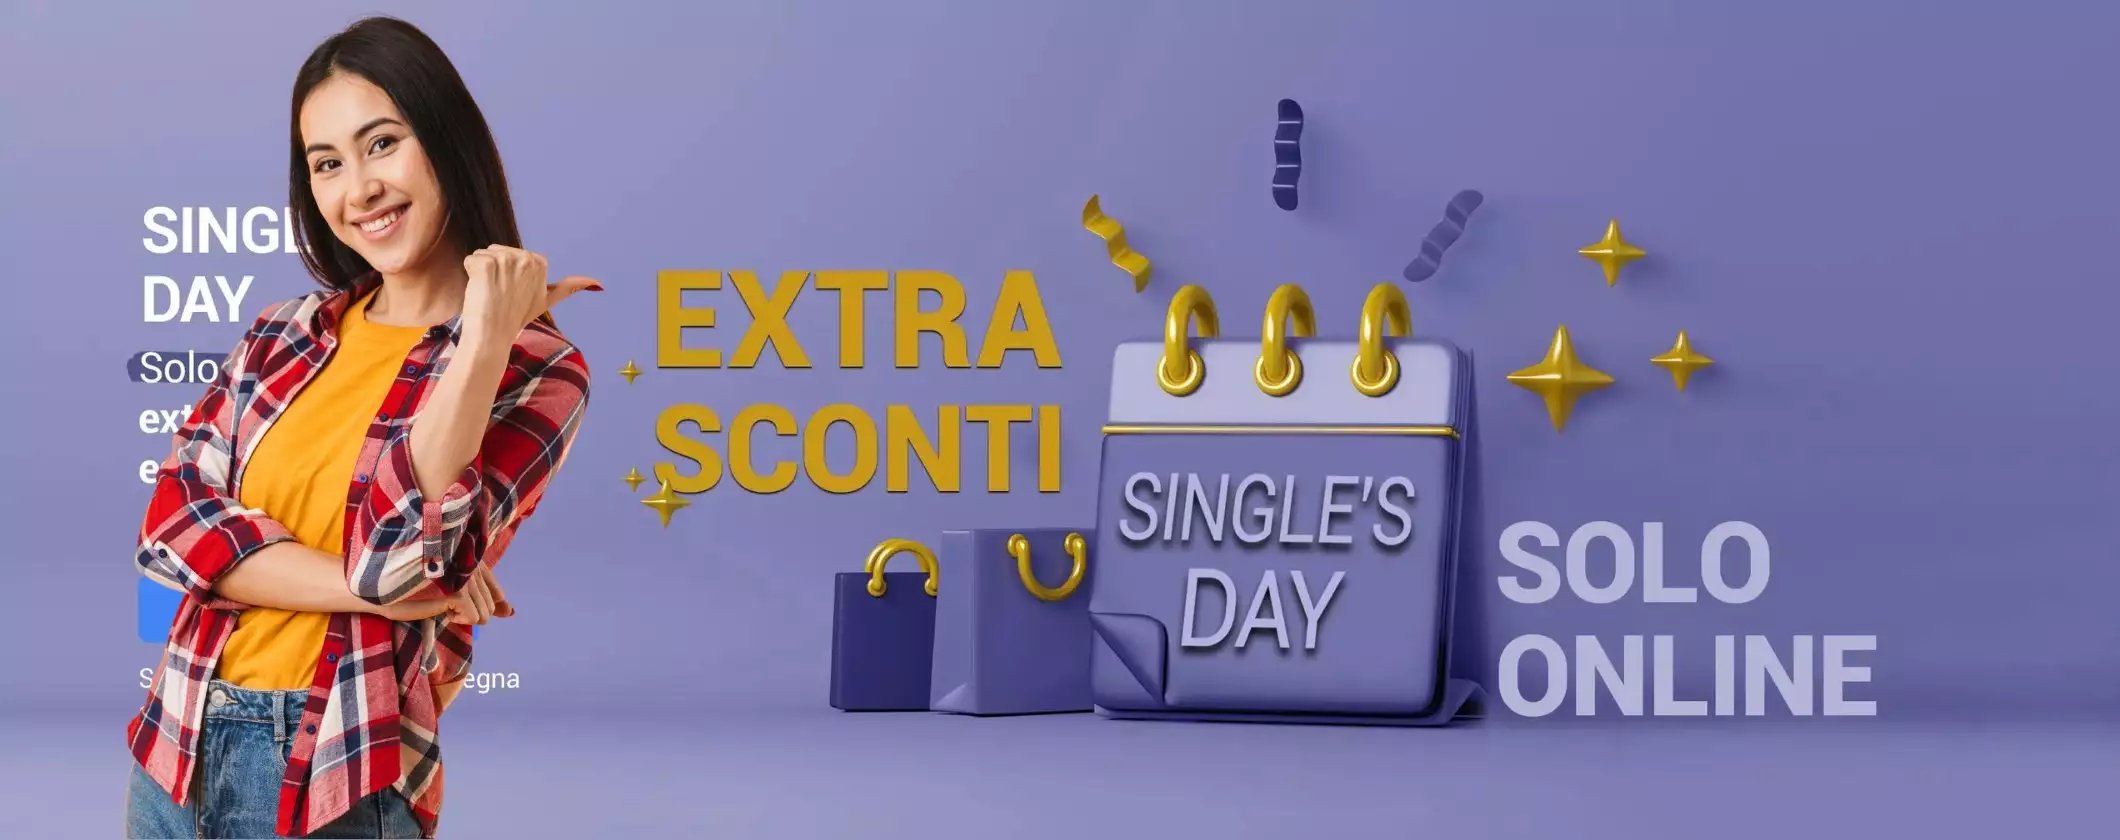 unieuro singles day